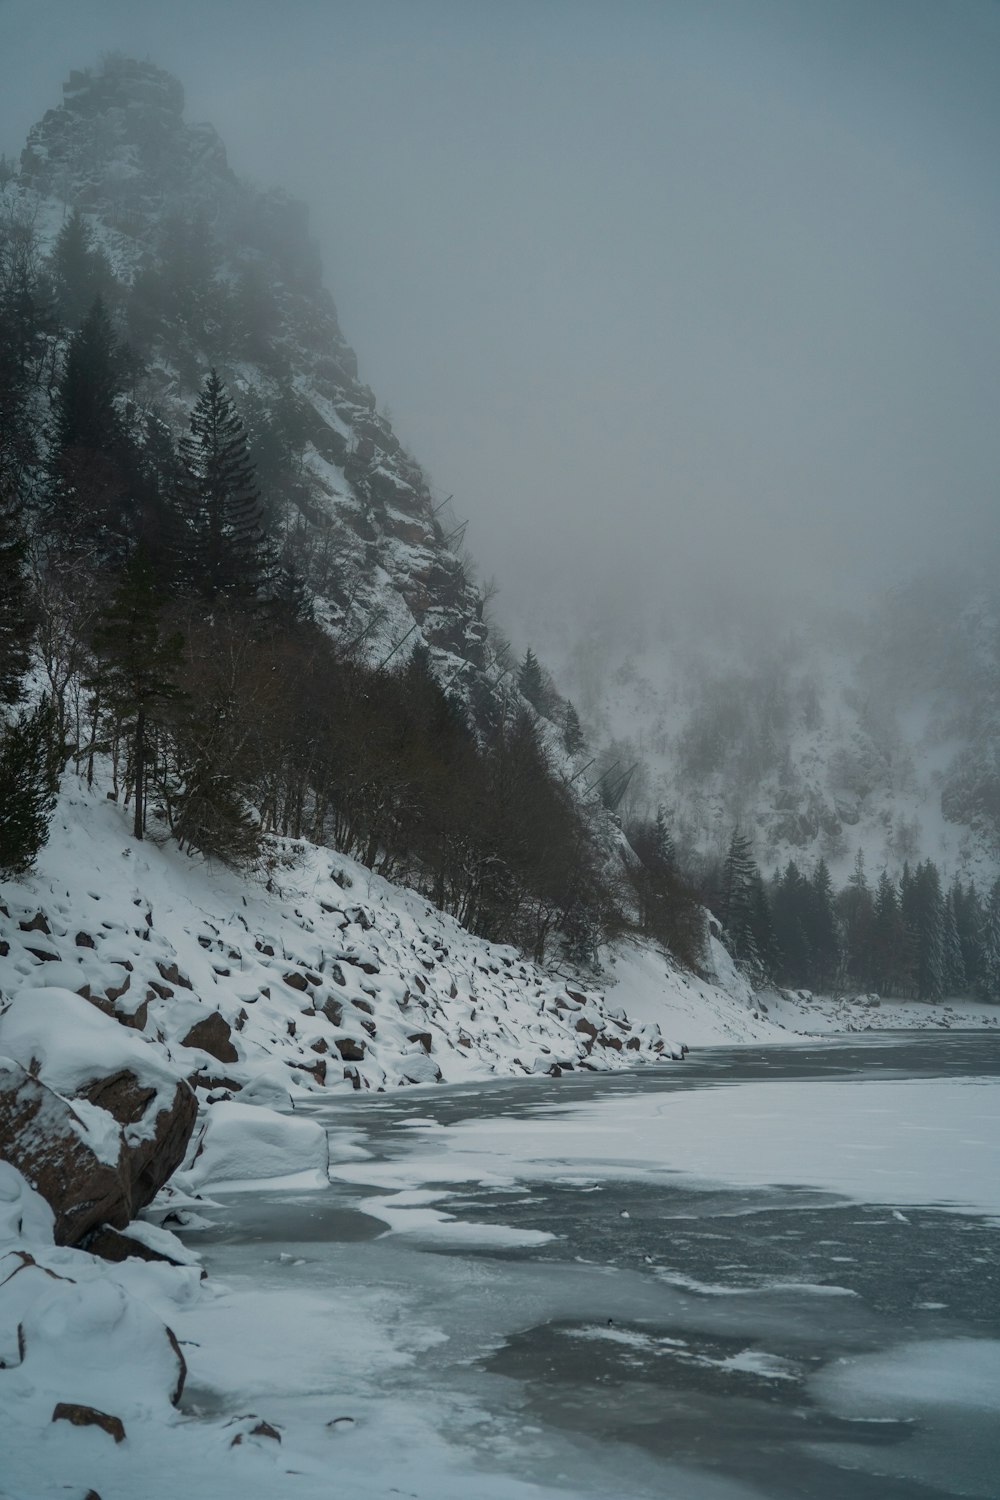 눈 덮인 산으로 둘러싸인 얼어붙은 호수